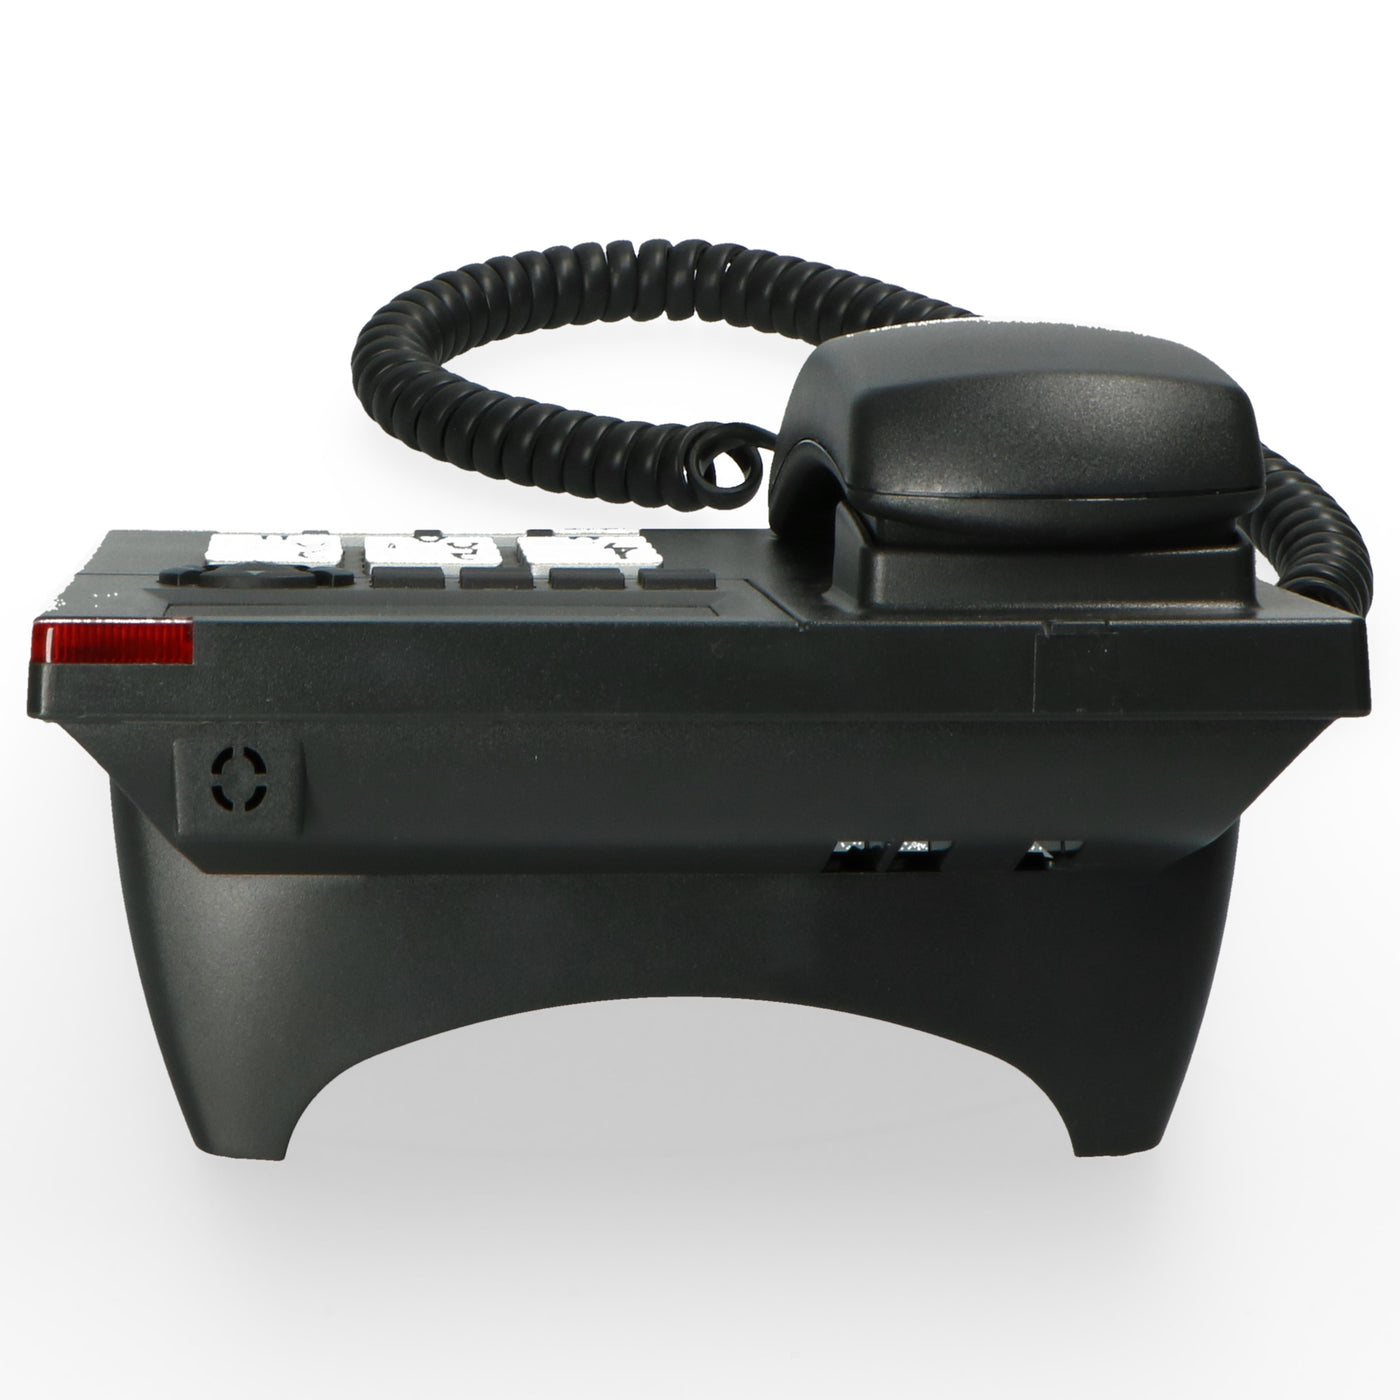 Profoon TX-325 - Vaste telefoon met display, zwart